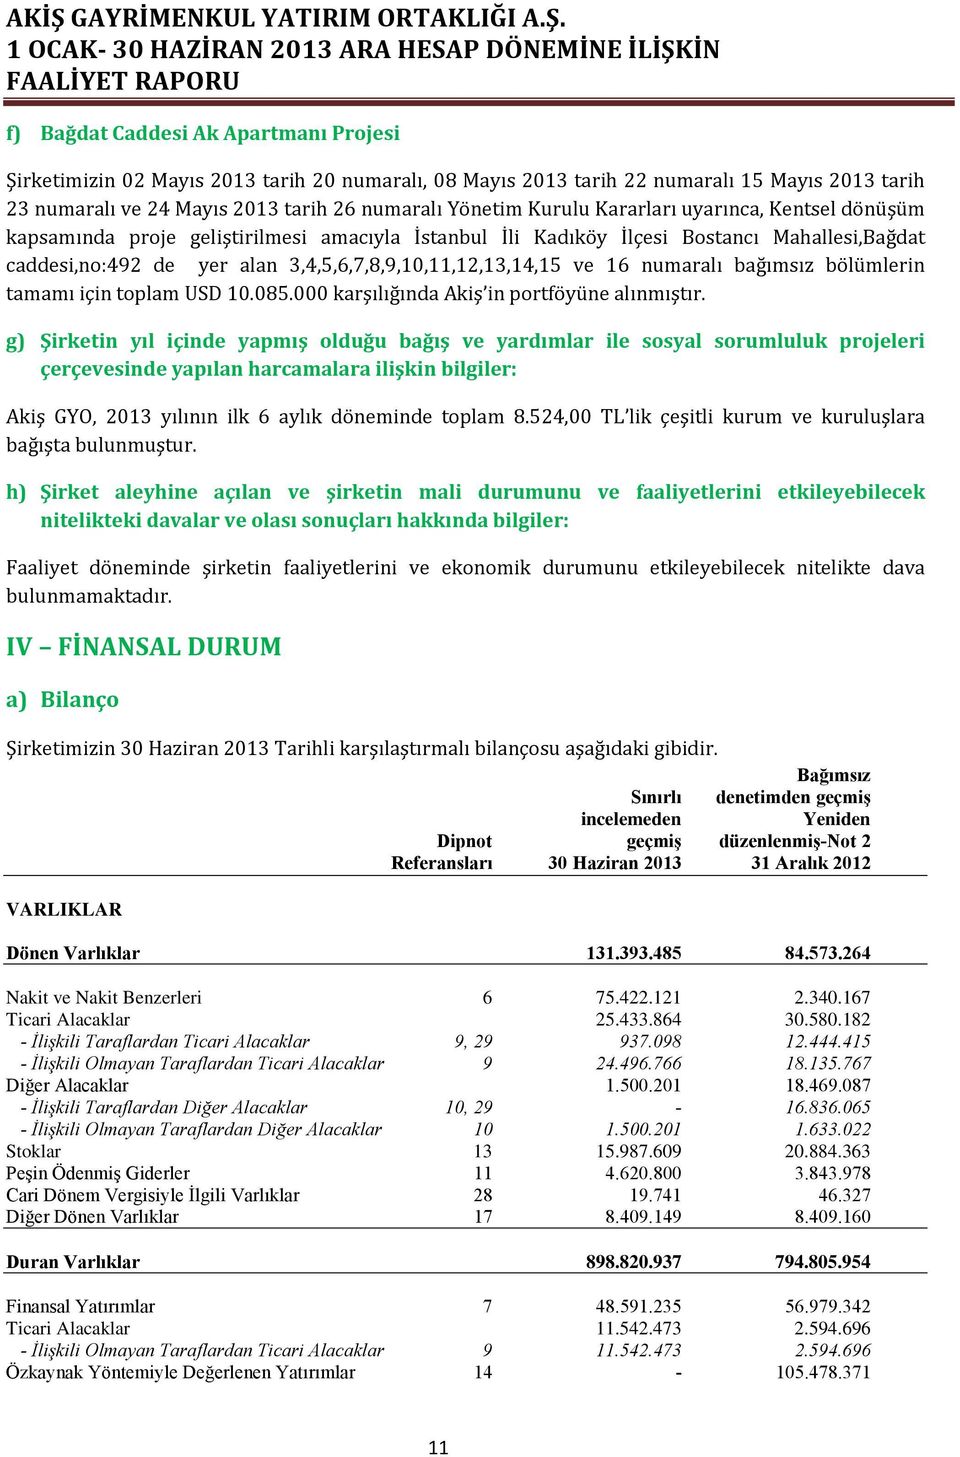 numaralı bağımsız bölümlerin tamamı için toplam USD 10.085.000 karşılığında Akiş in portföyüne alınmıştır.